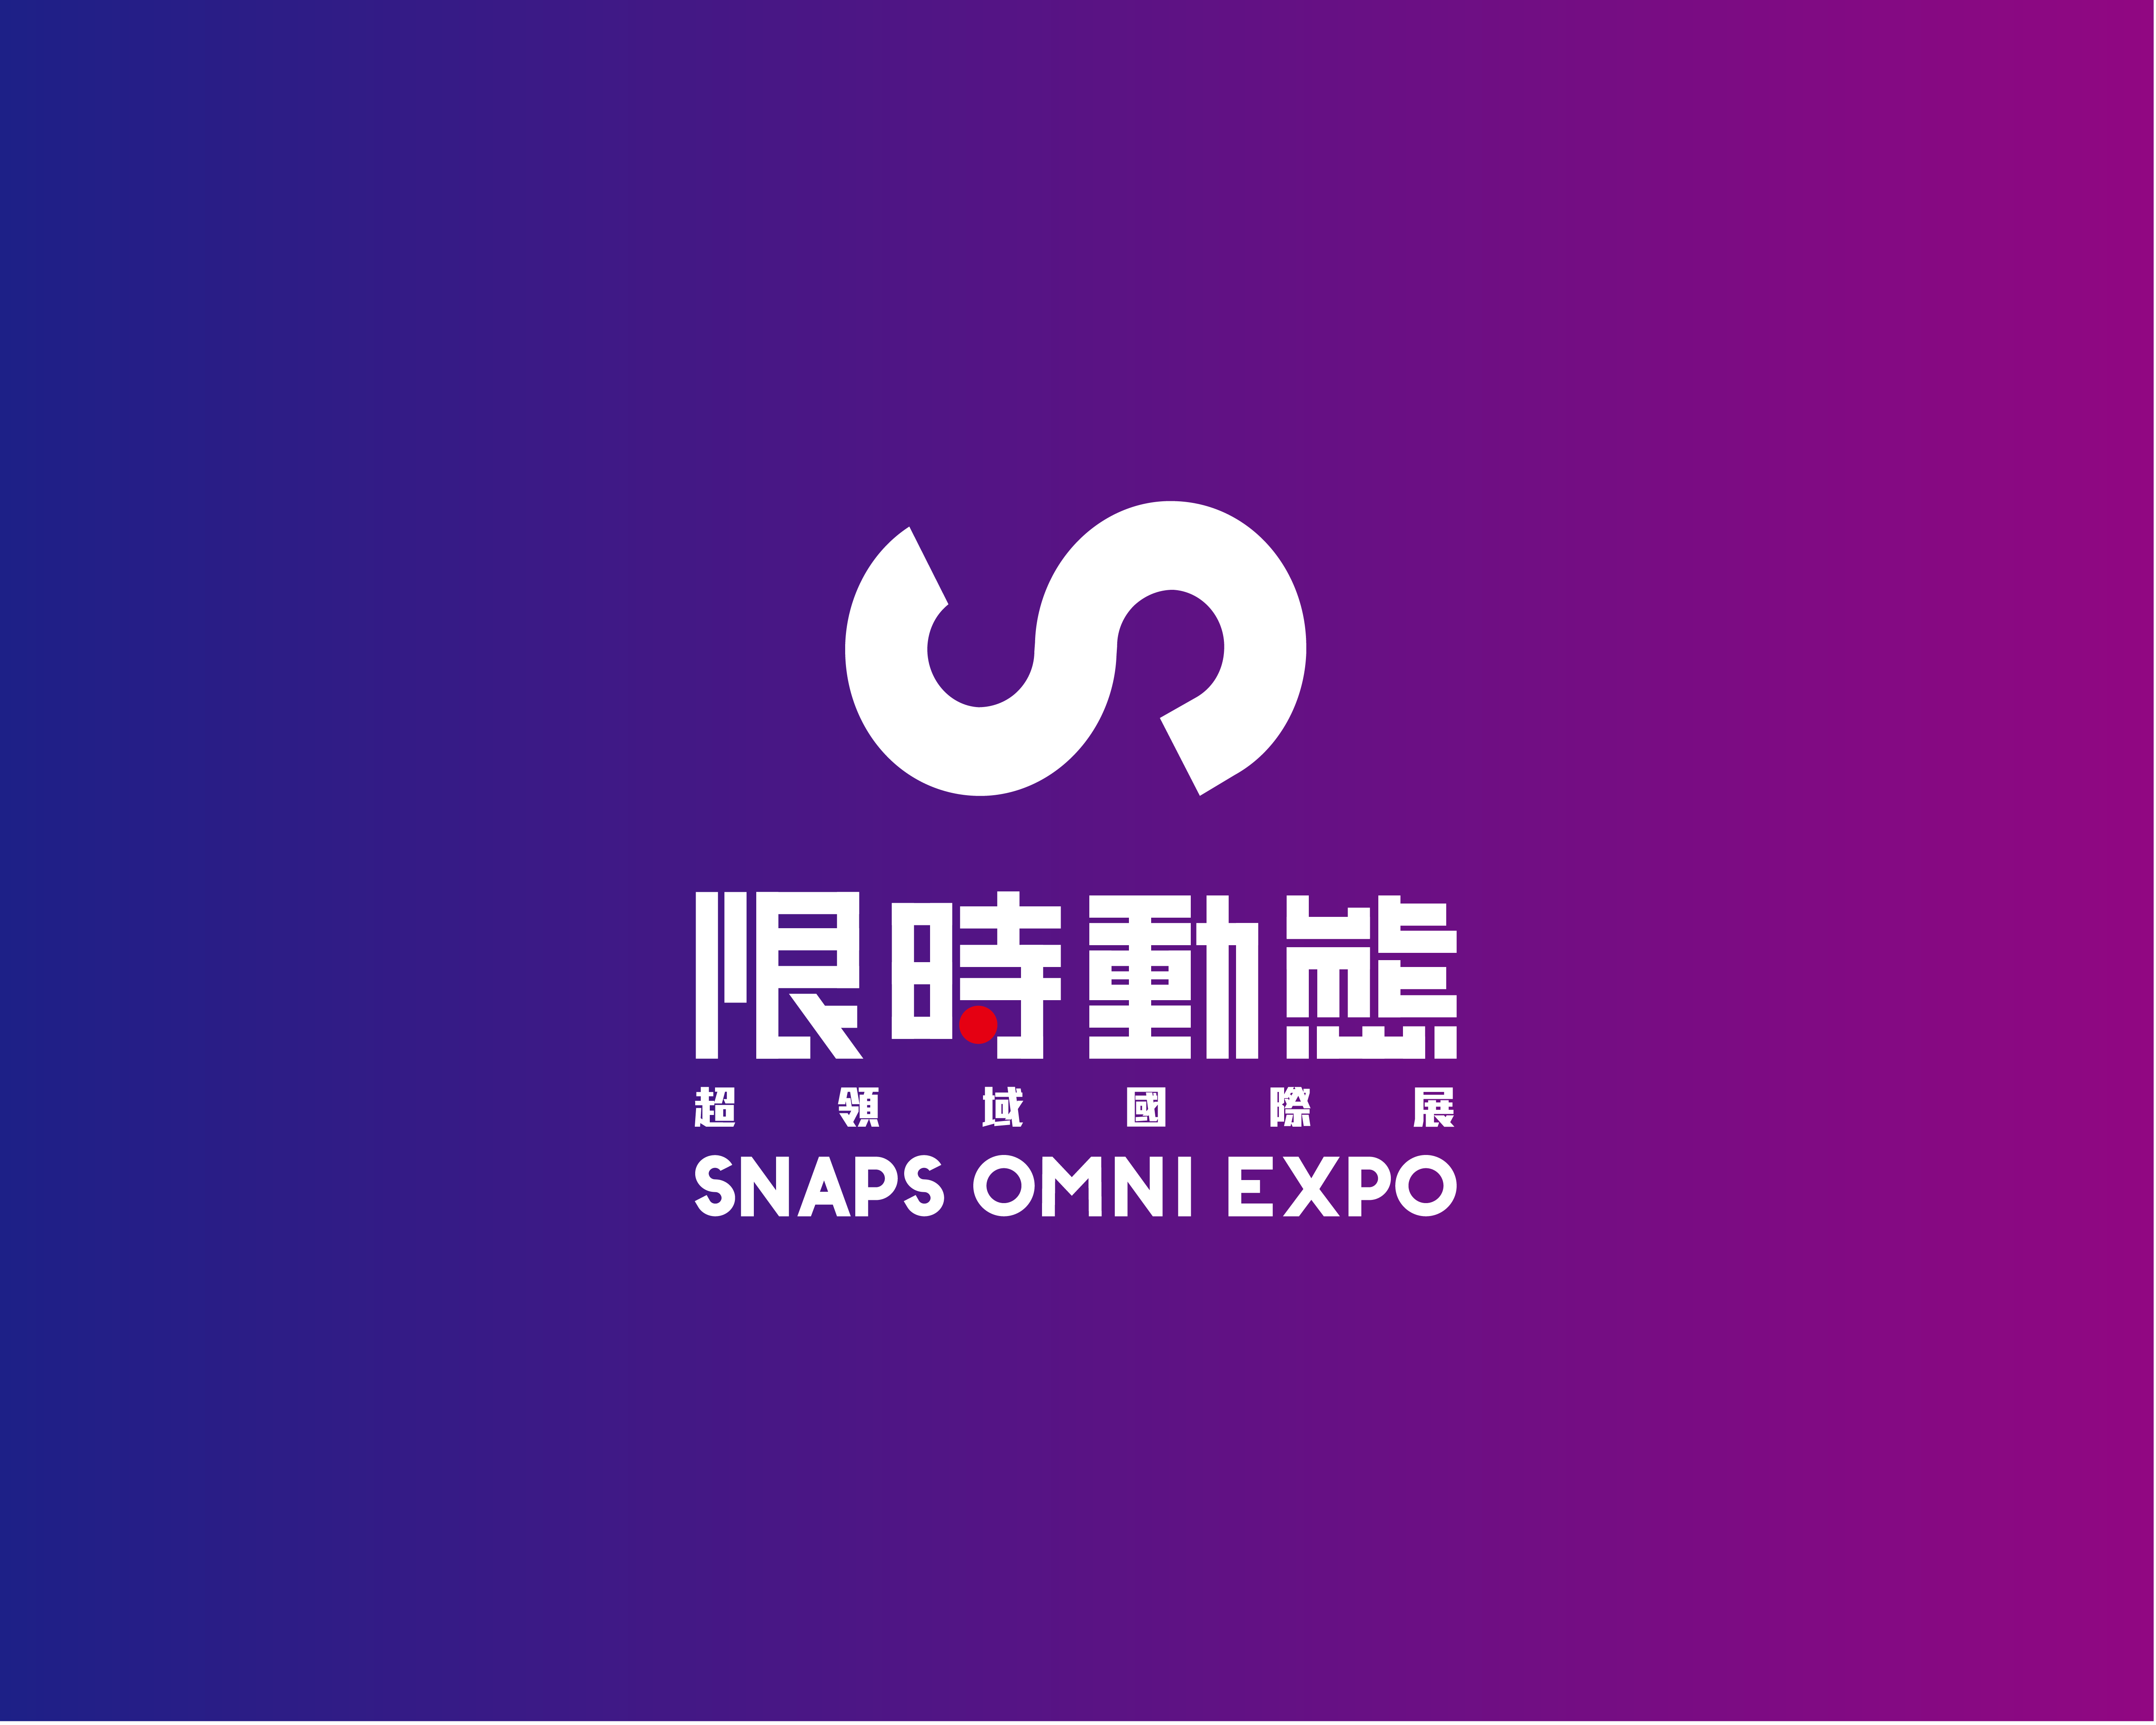  2019 限時動態 - 超領域國際展 SNAPS OMNI EXPO